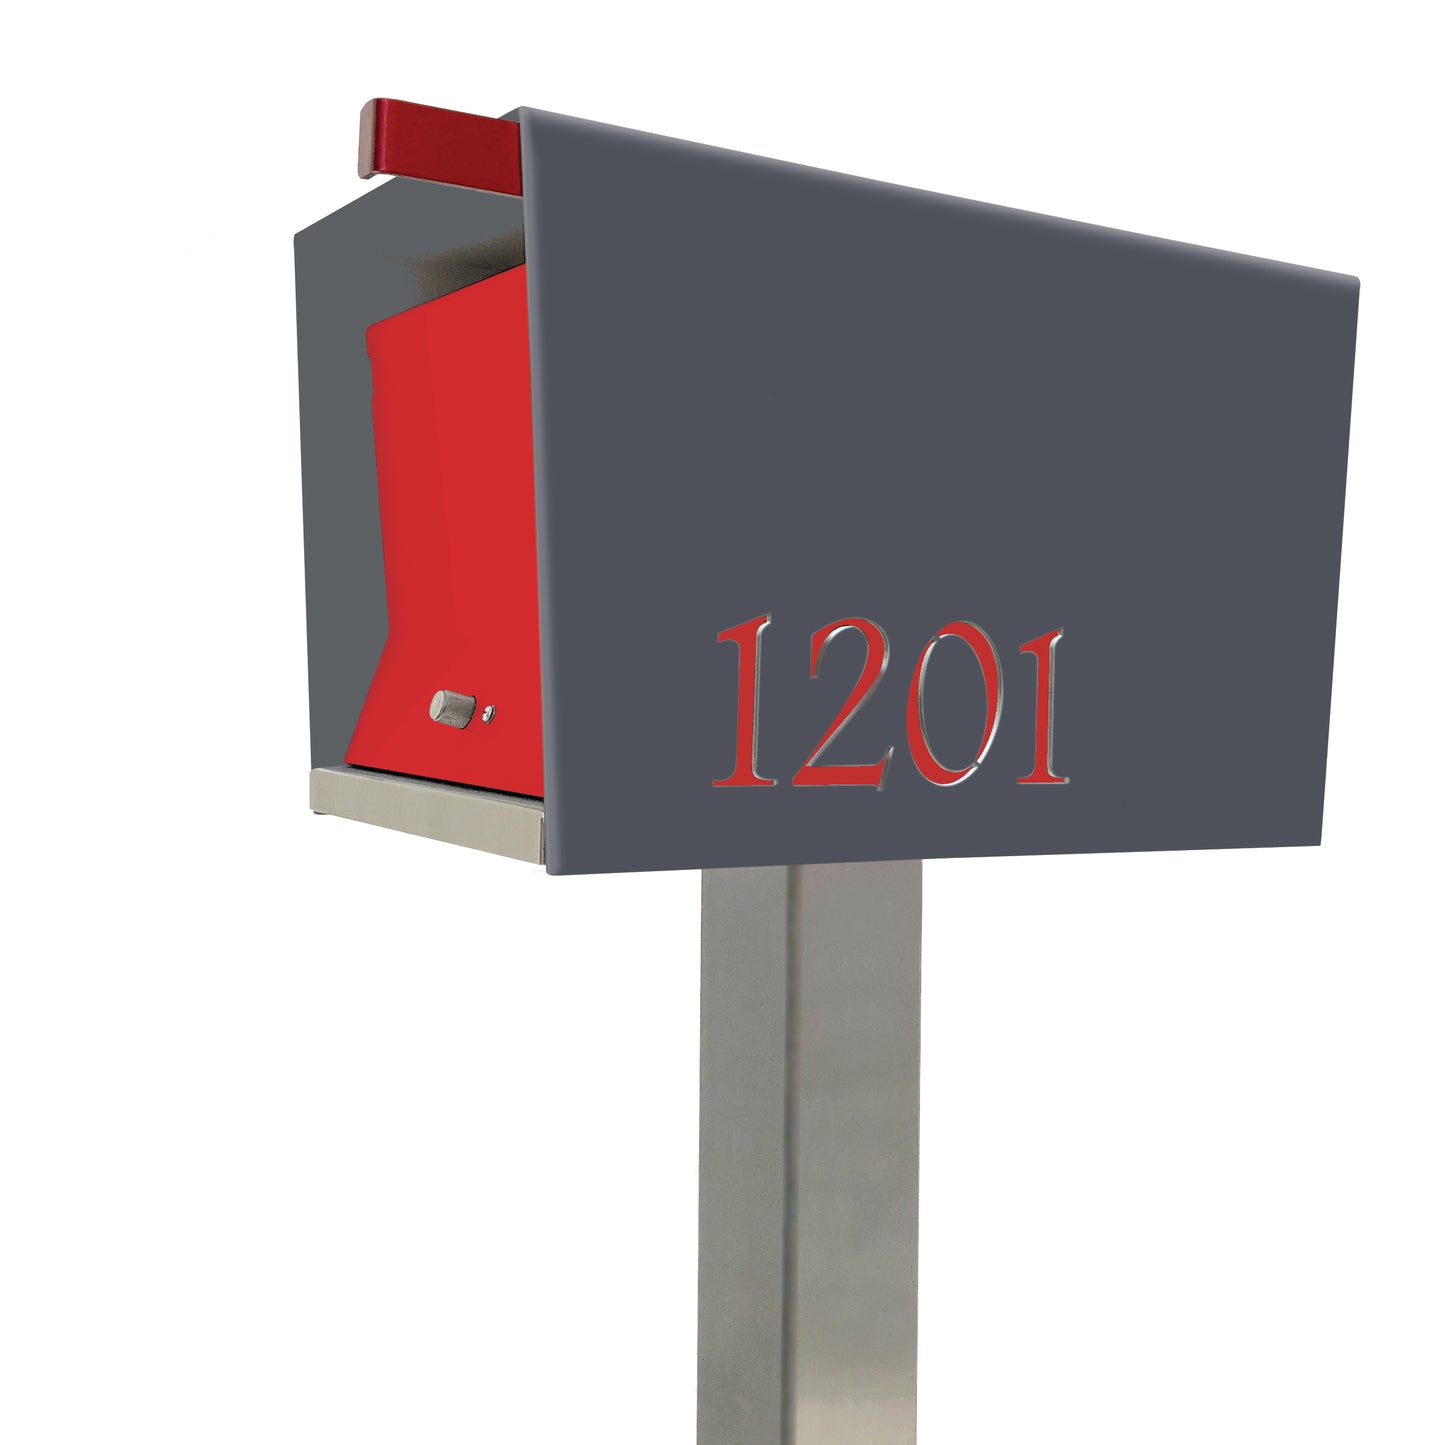 The Original UptownBox in DESIGNER GREY - Modern Mailbox